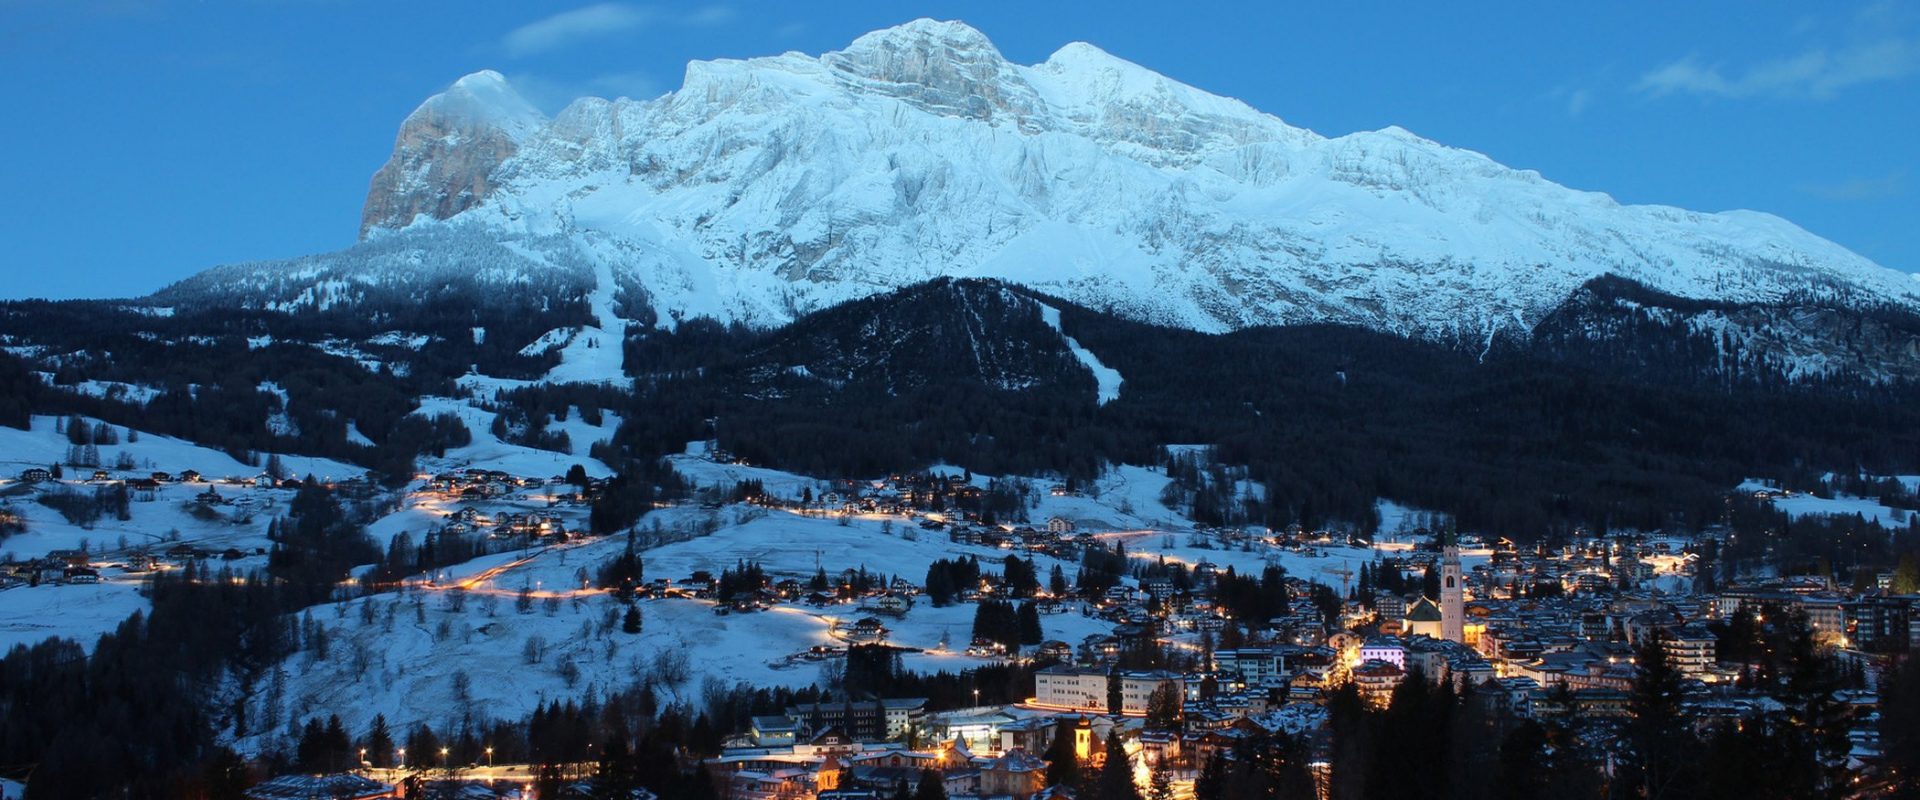 village near alpine mountain